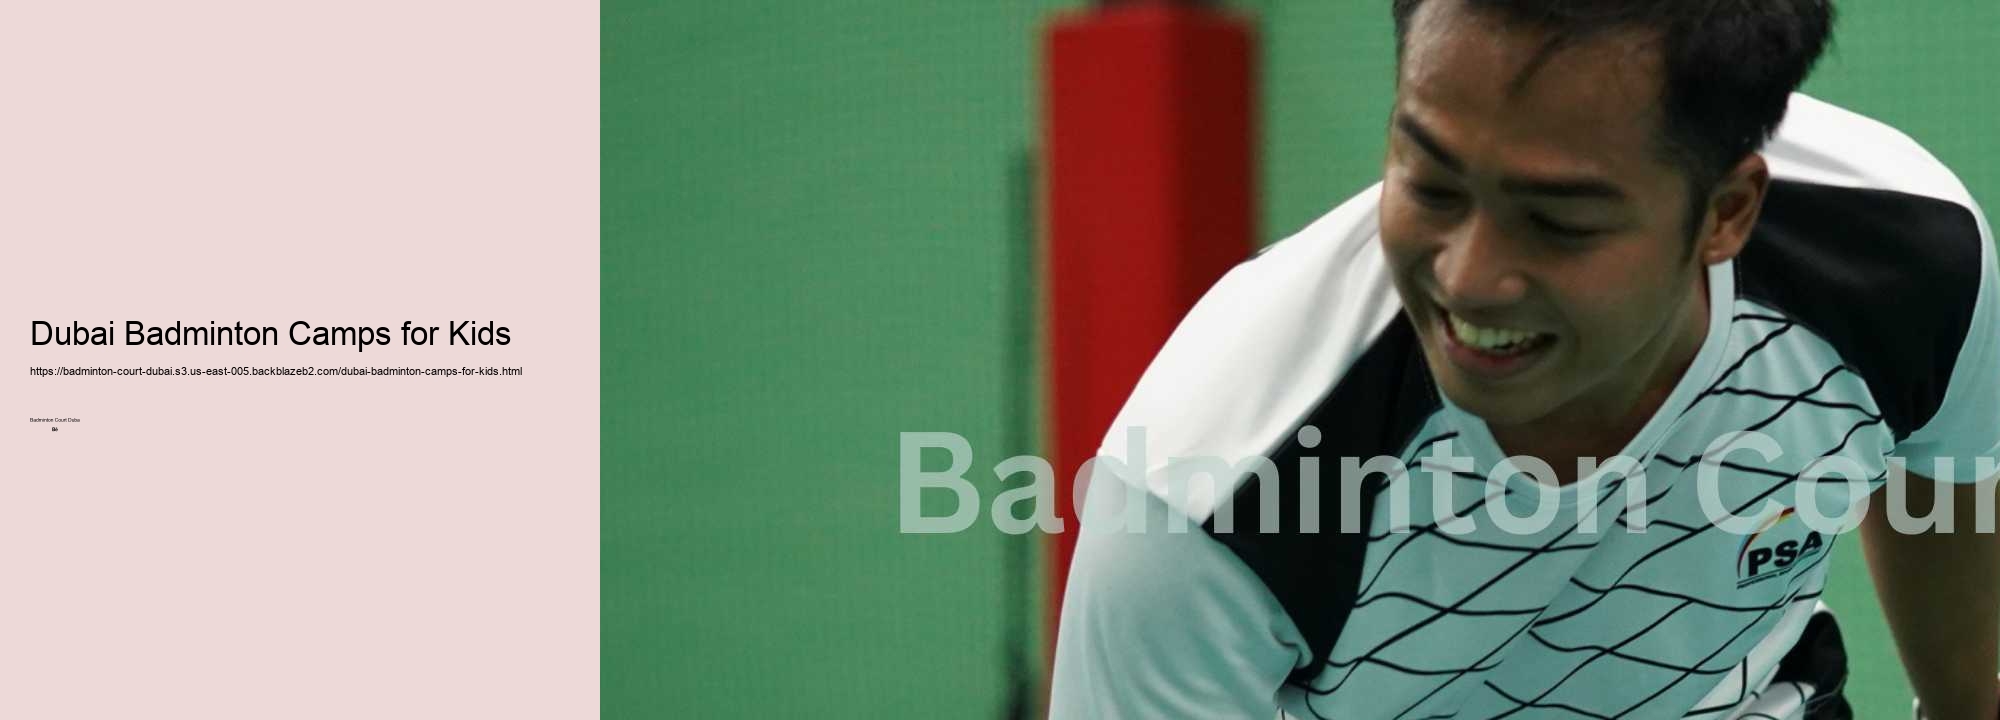 Dubai Badminton Camps for Kids